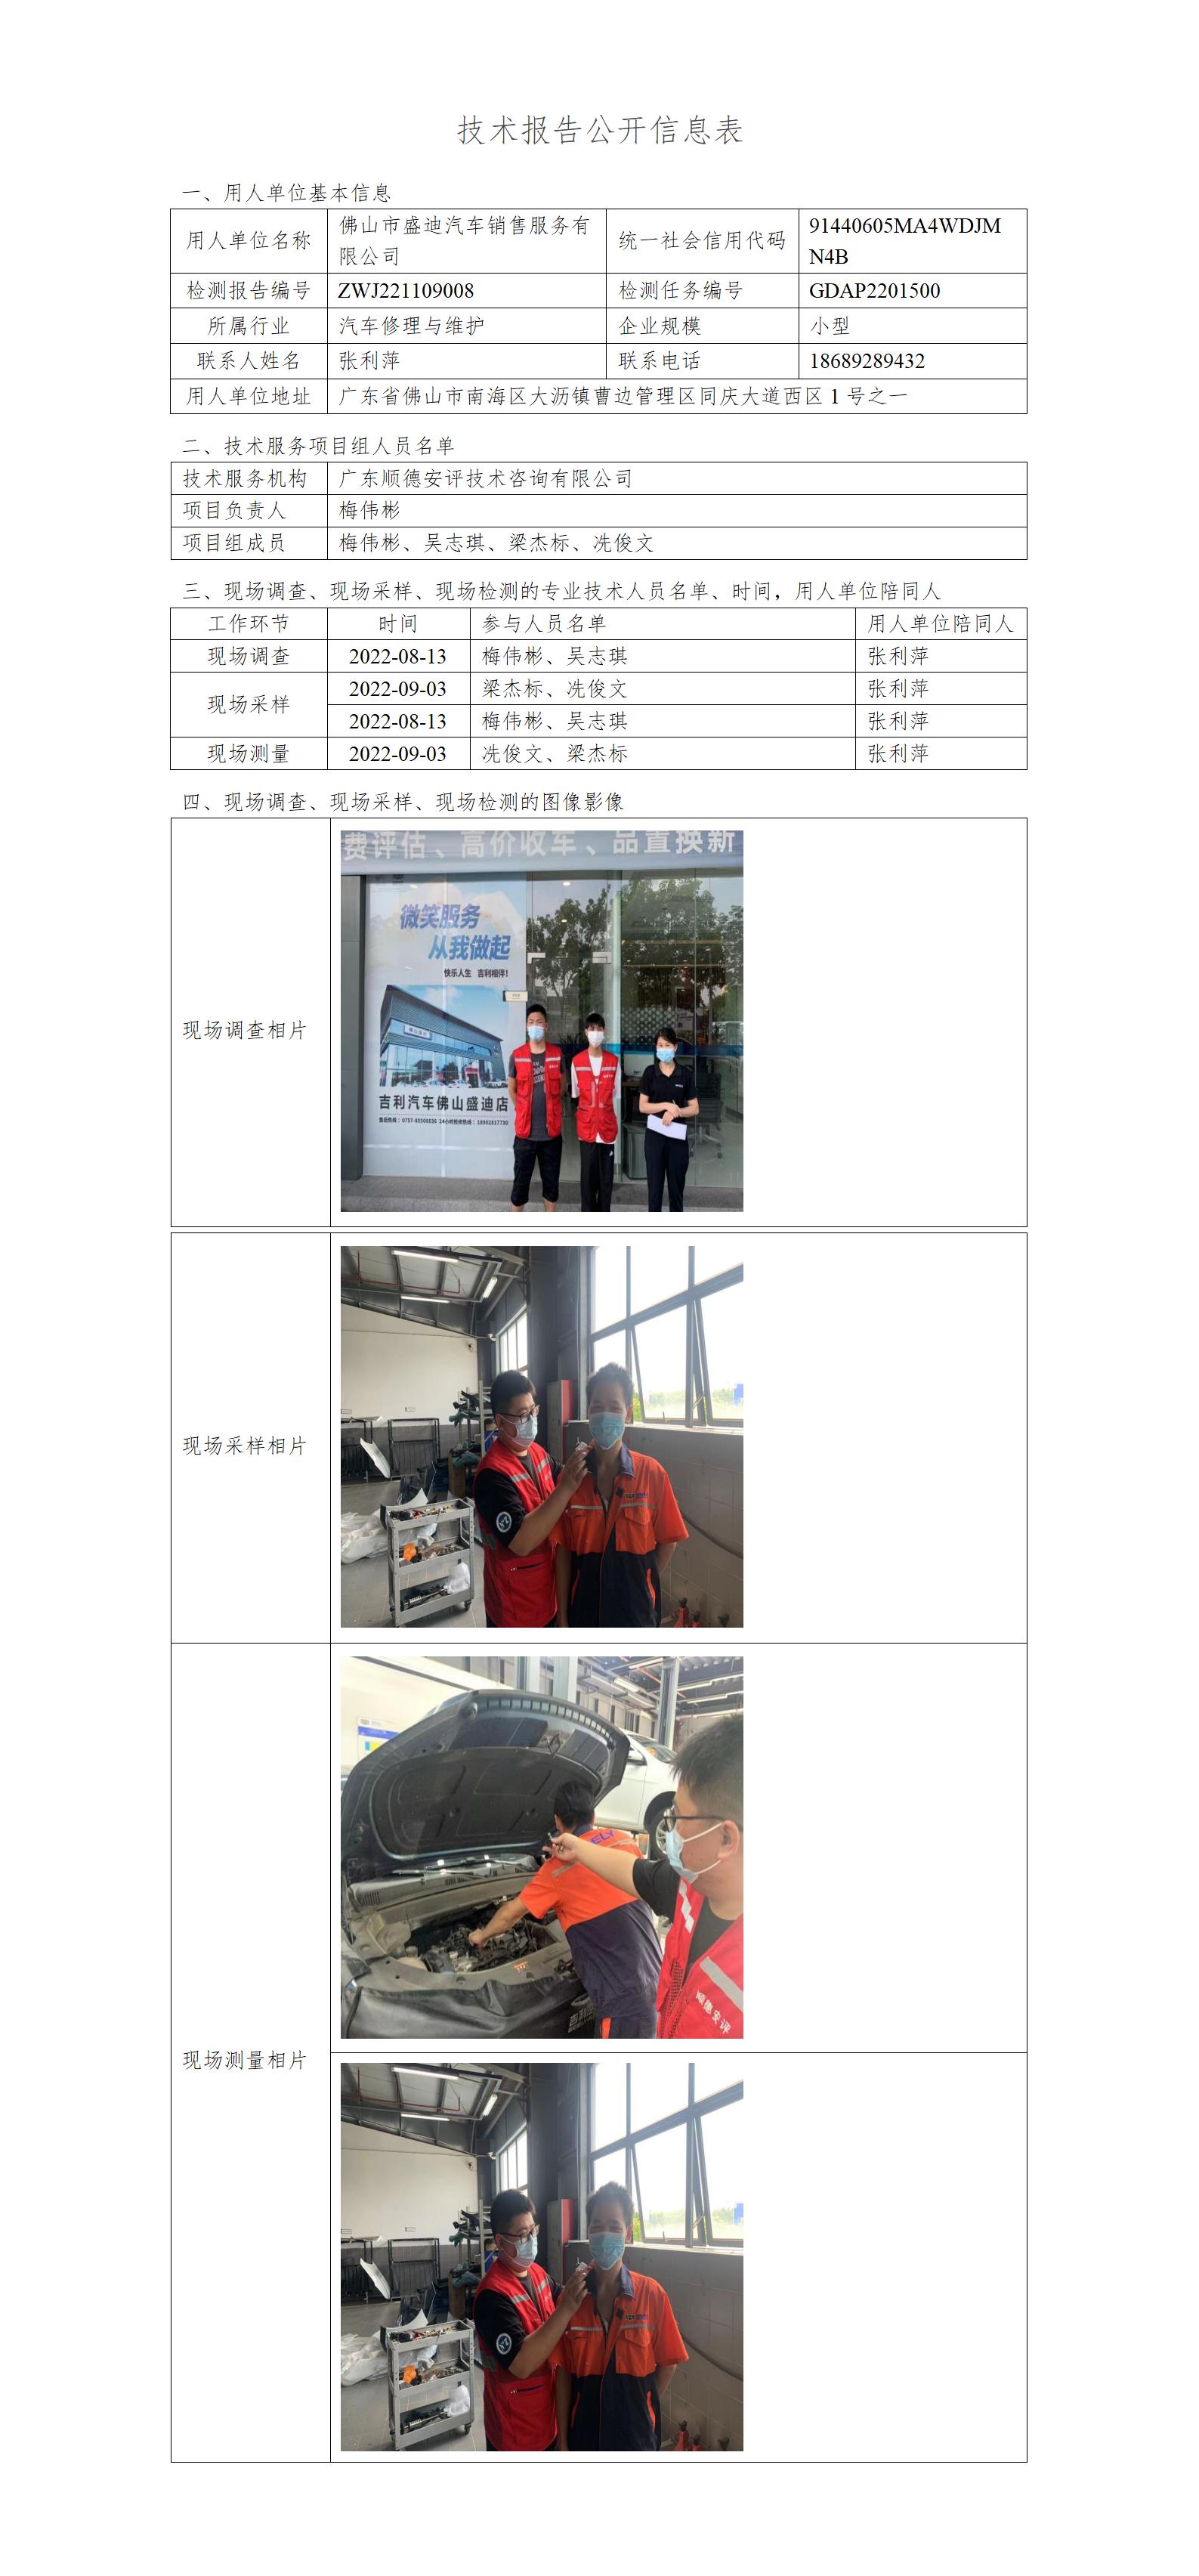 佛山市盛迪汽车销售服务有限公司-2022-技术报告公开信息表_01.jpg